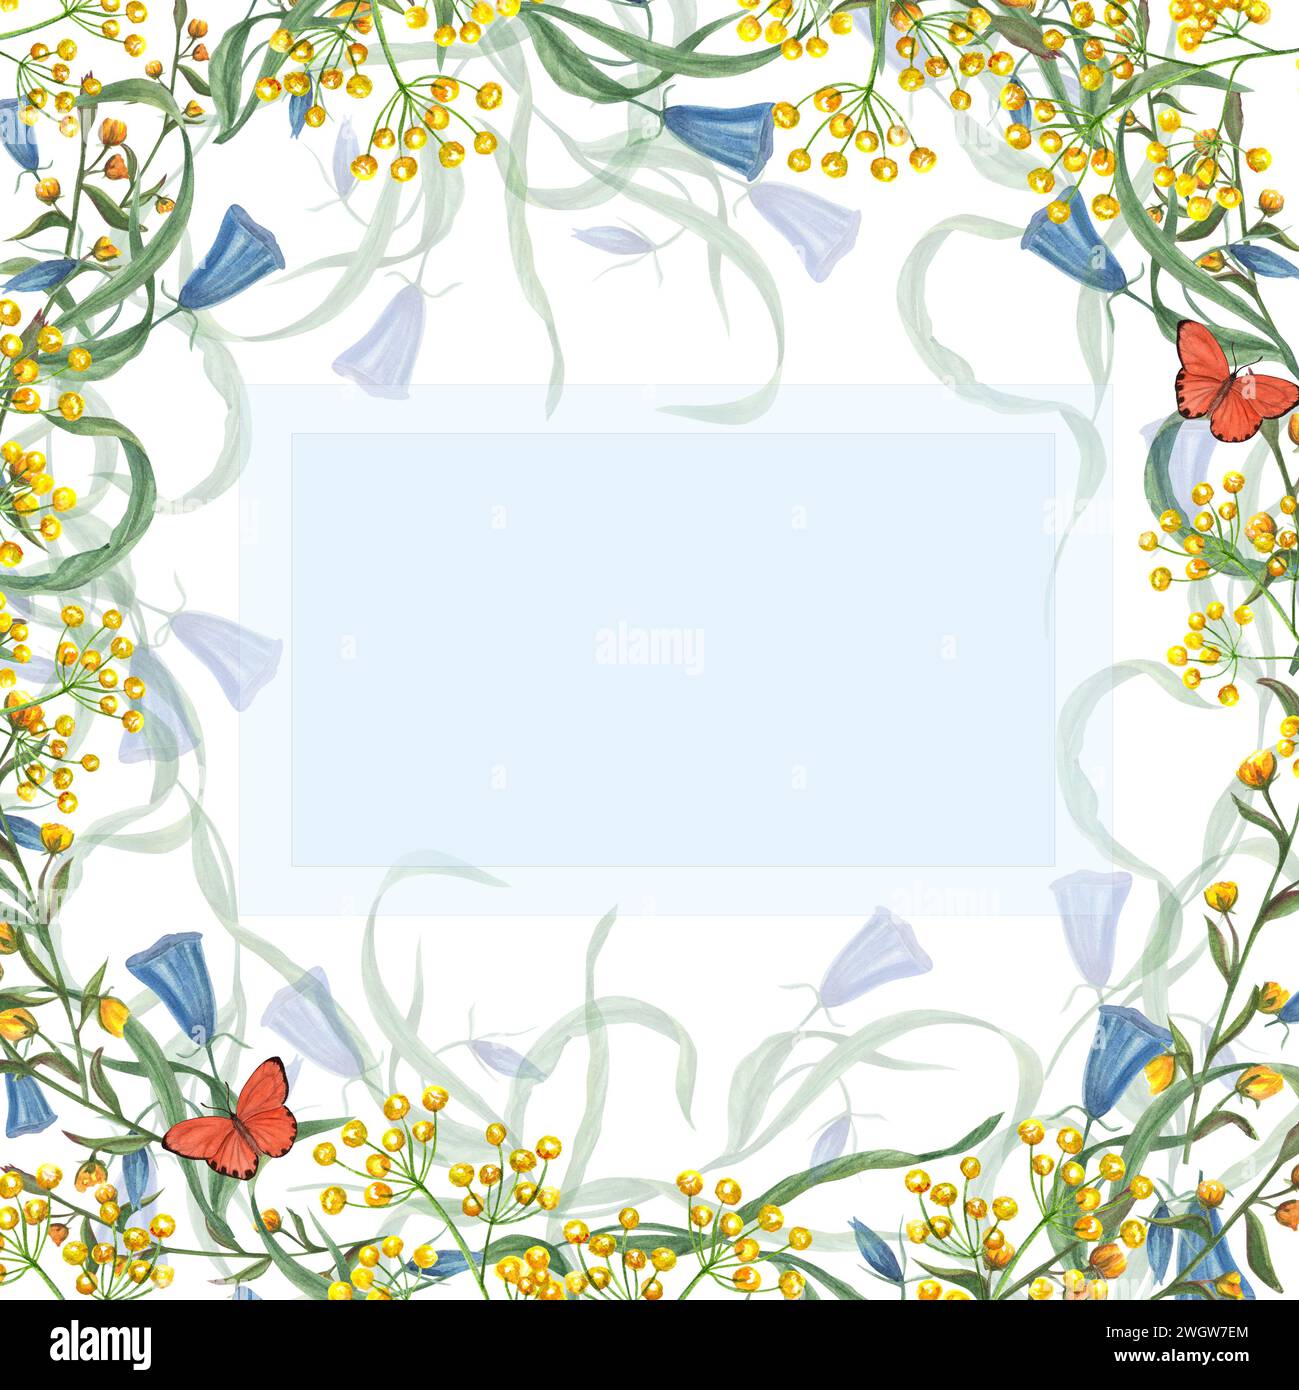 Quadratischer Rahmen mit Frühlingsblumen, Schmetterlingen. Gelbe, blau blühende Blumen. Aquarell Geburtstagsillustration für Gruß, Karten Design, Einladung Stockfoto